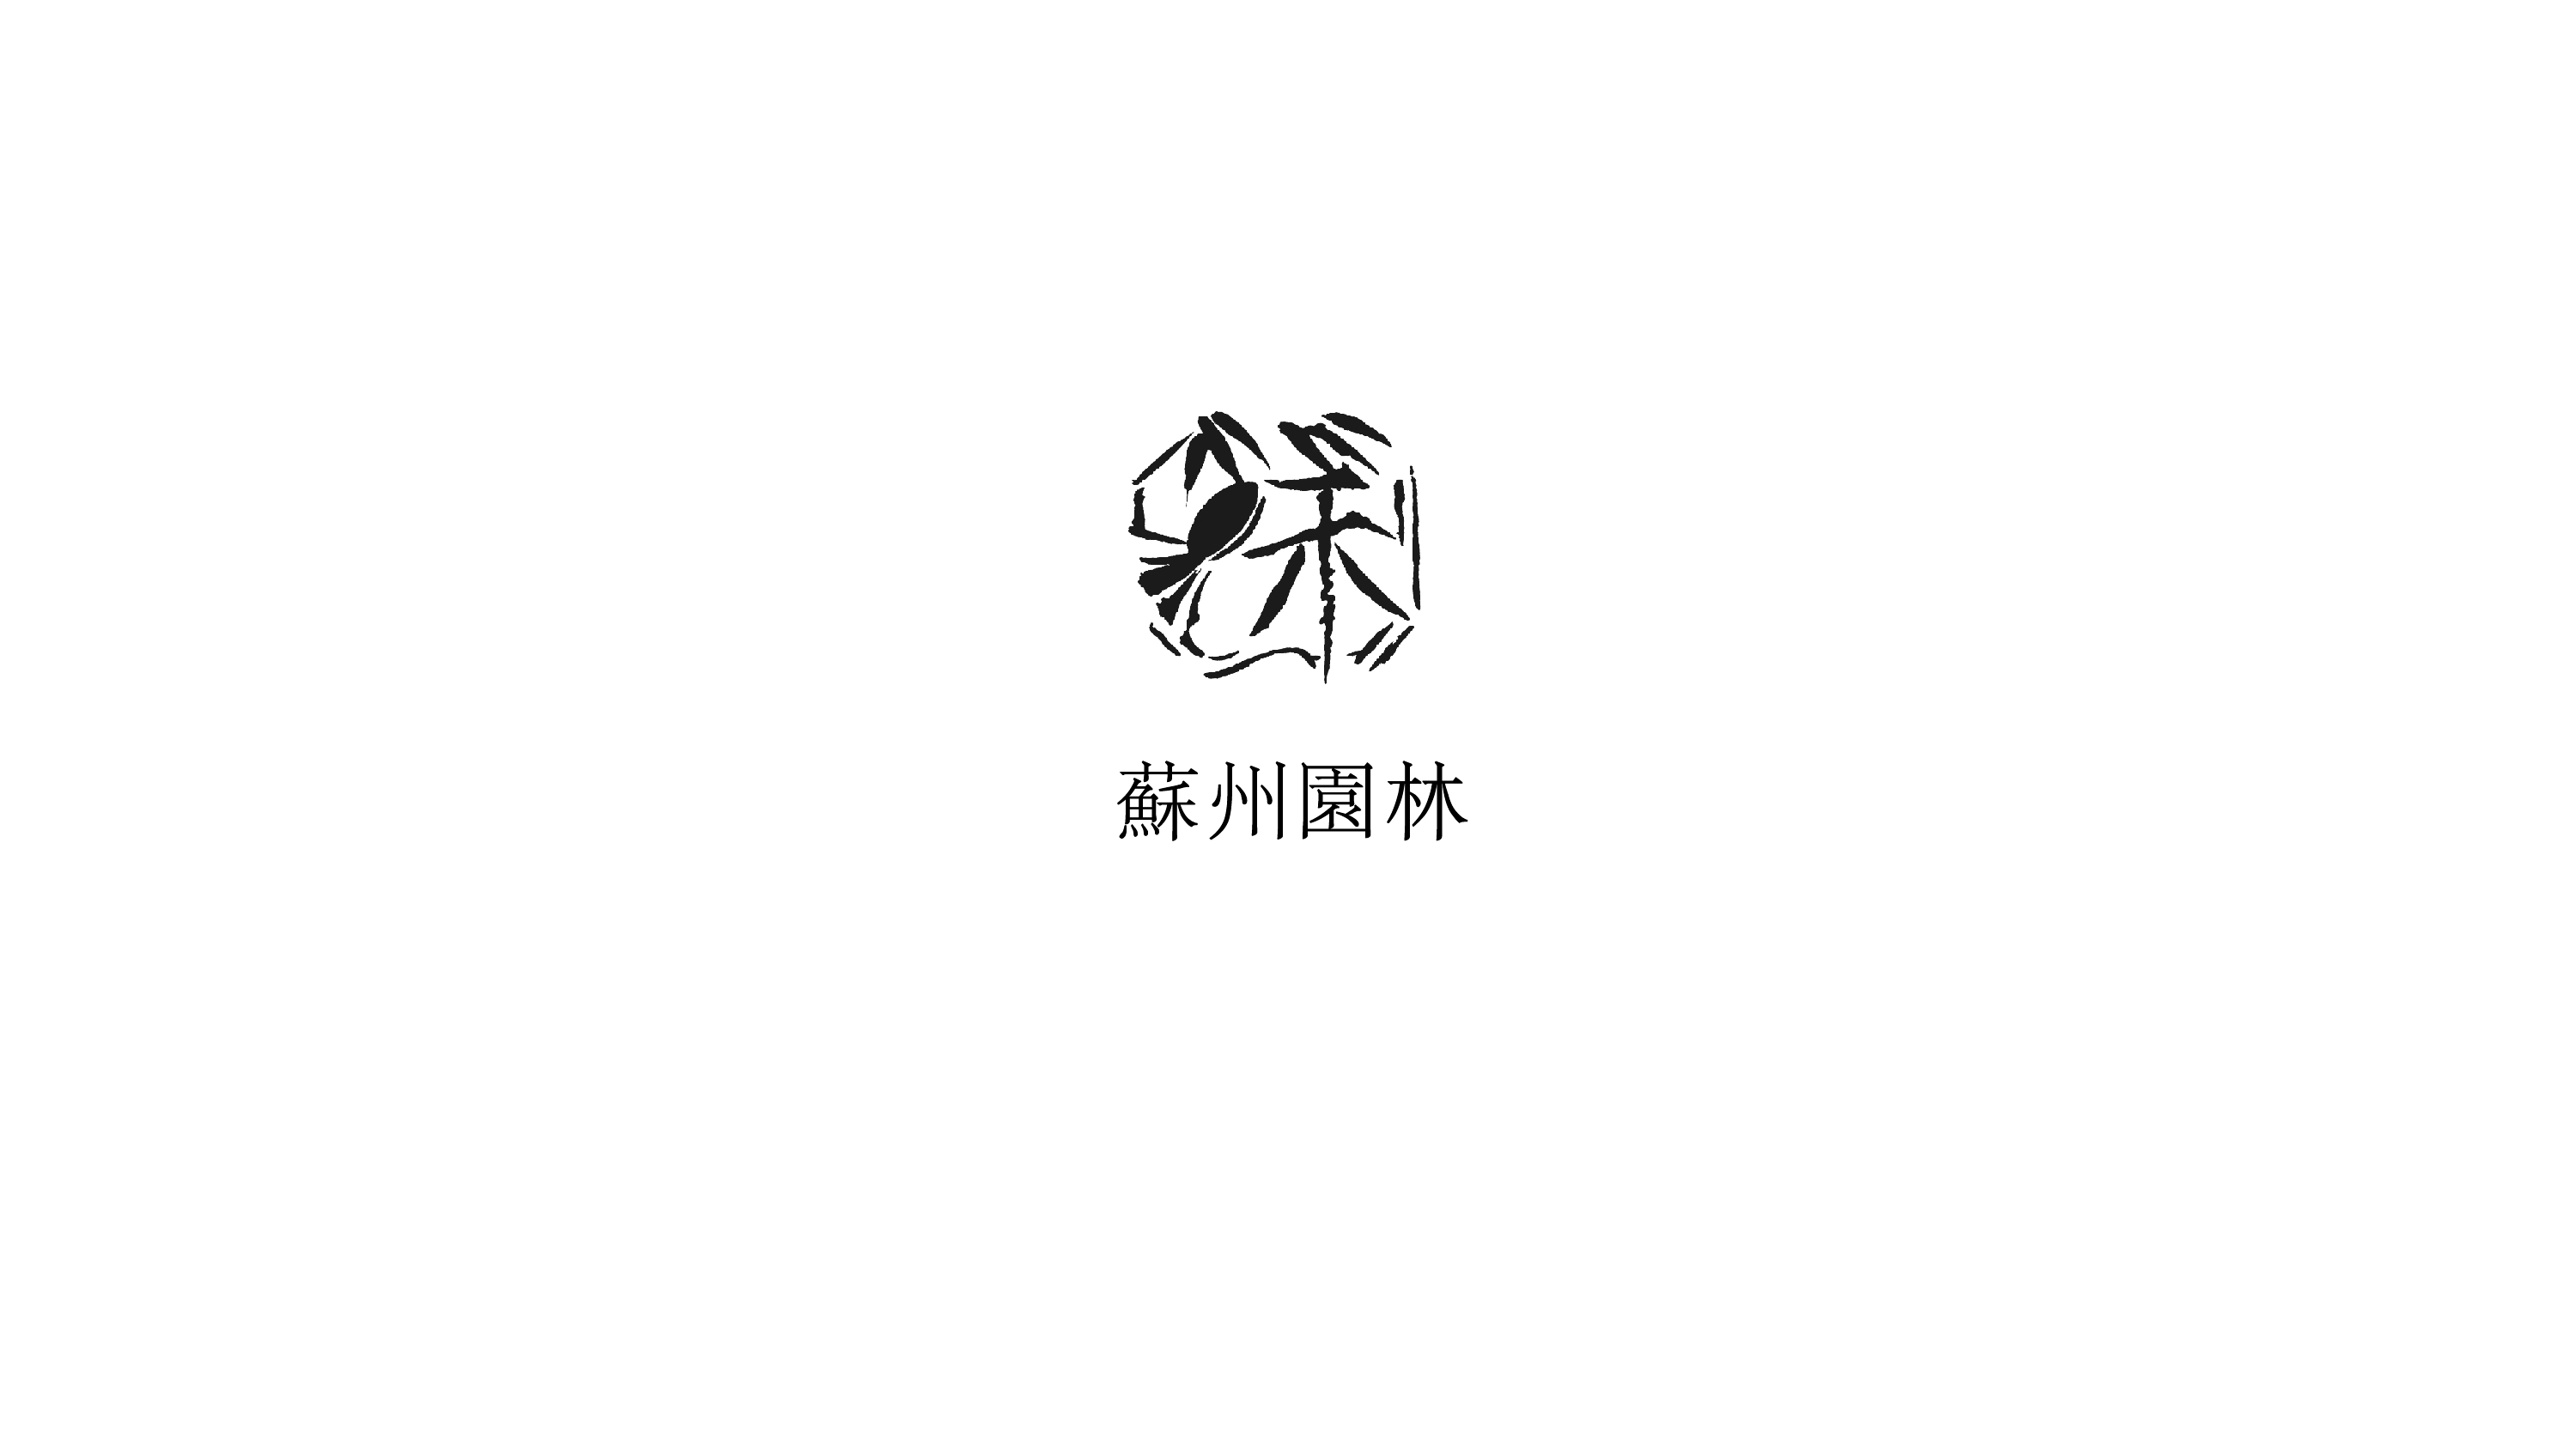 苏州市徽图片